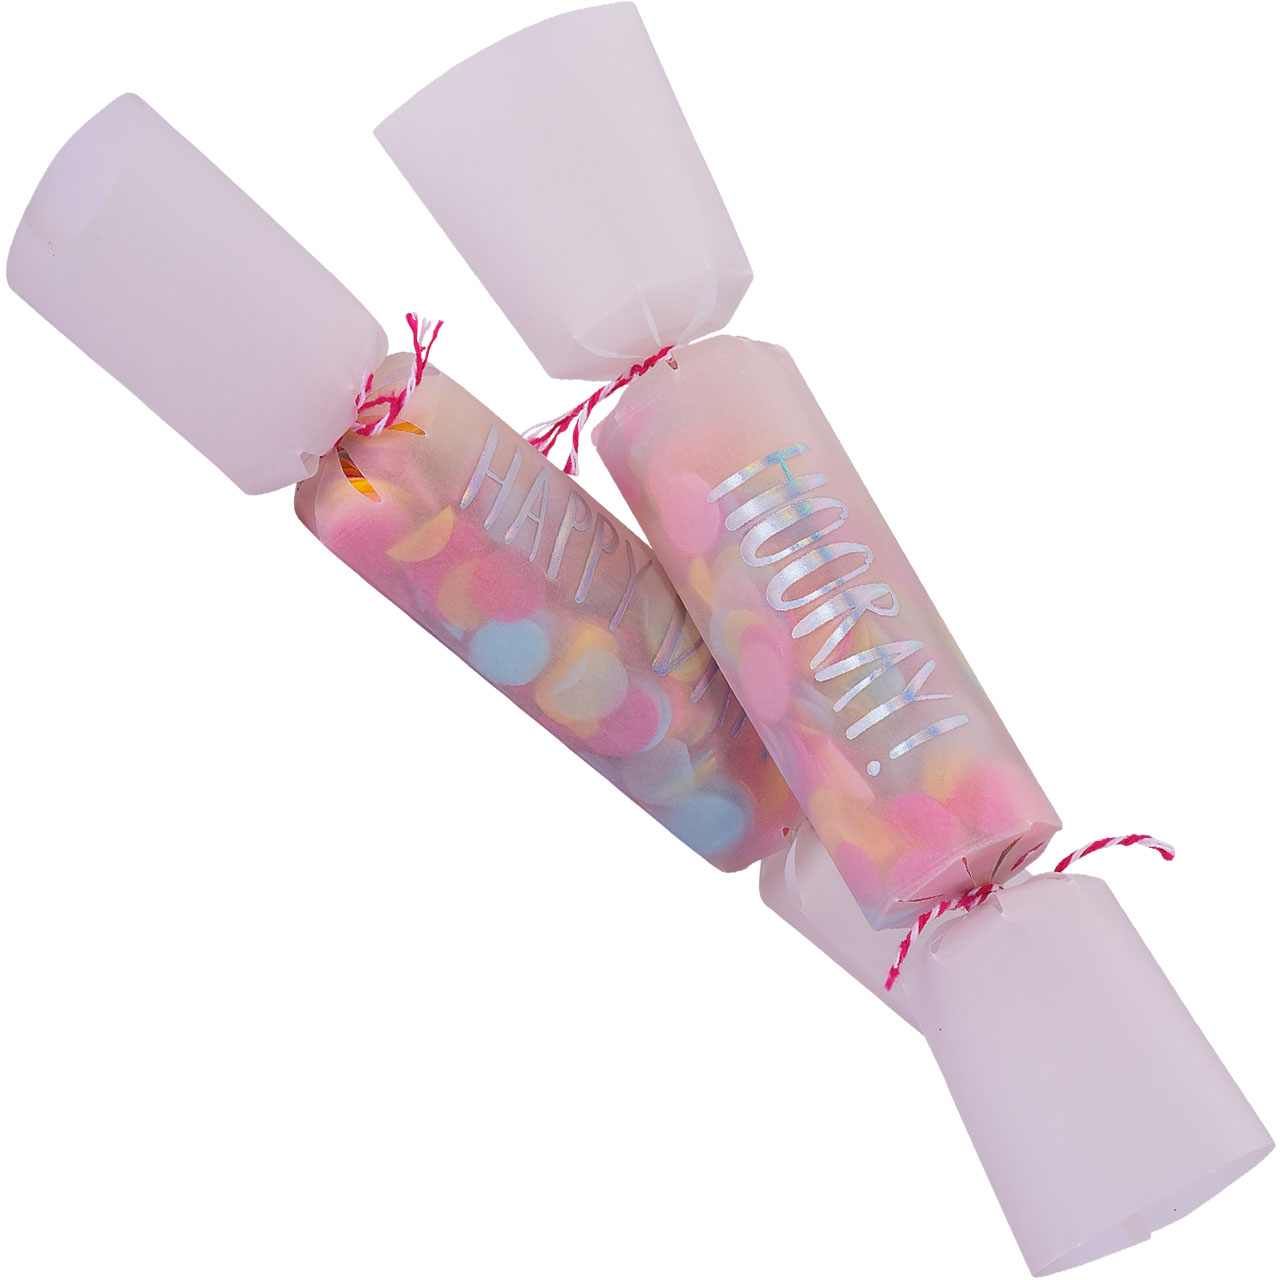 Crackers - Neon & Pastel Confetti 